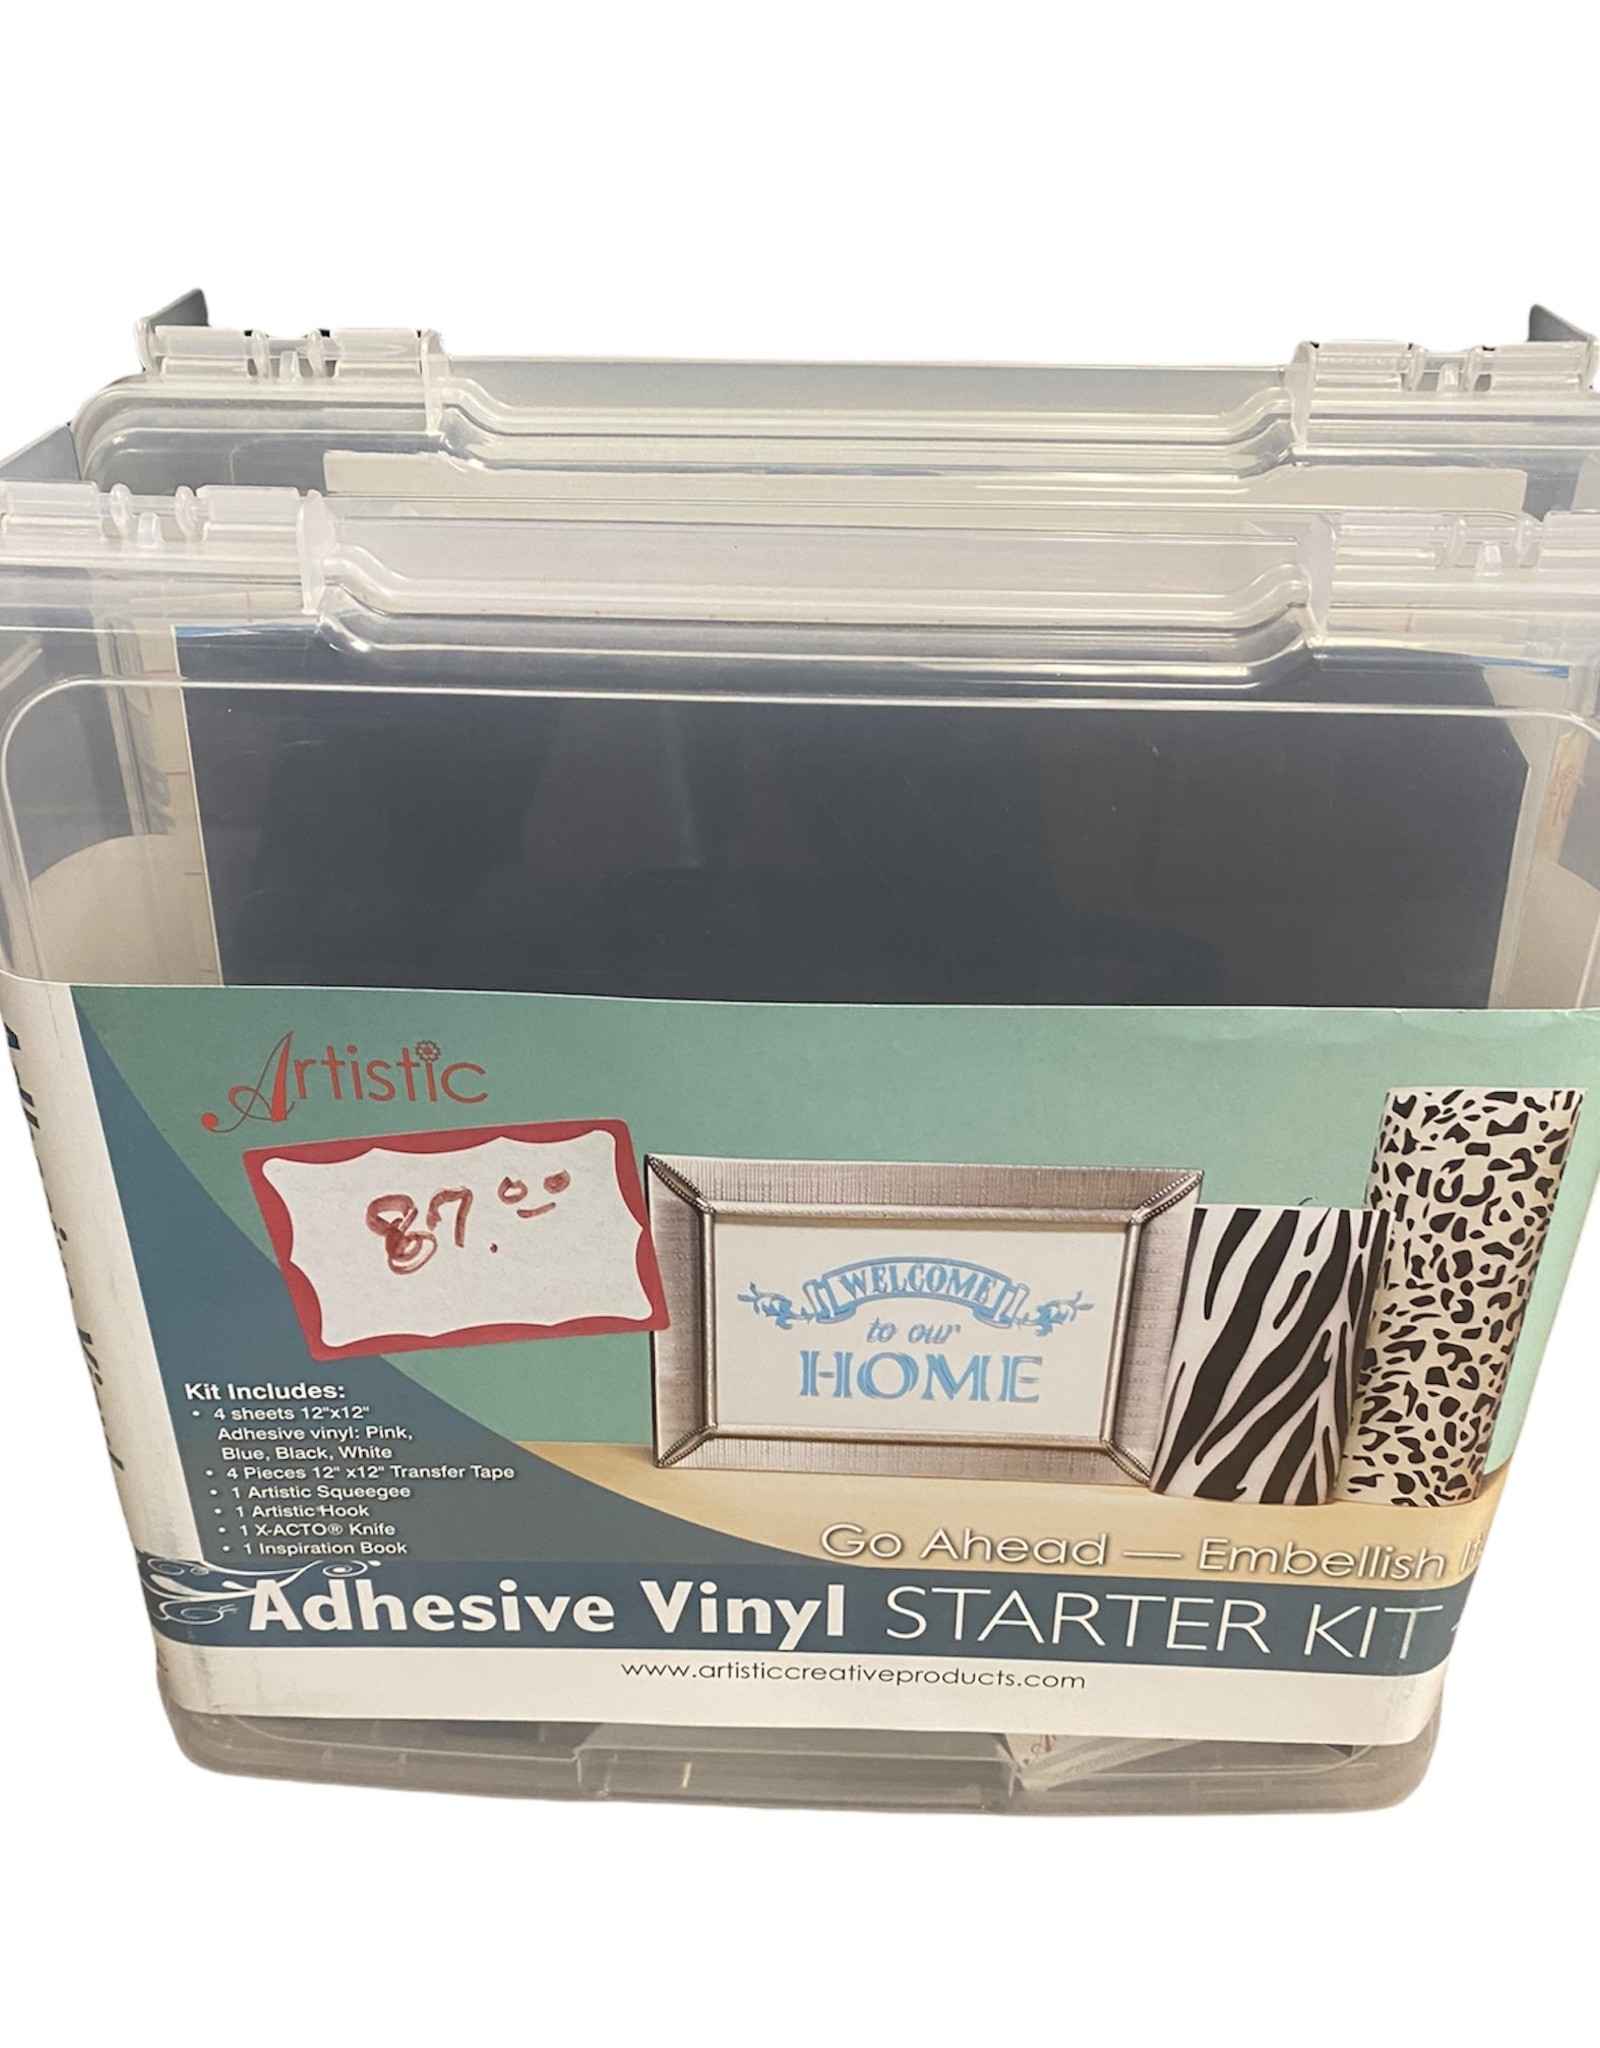 Artistic Adhesive Vinyl Starter Kit